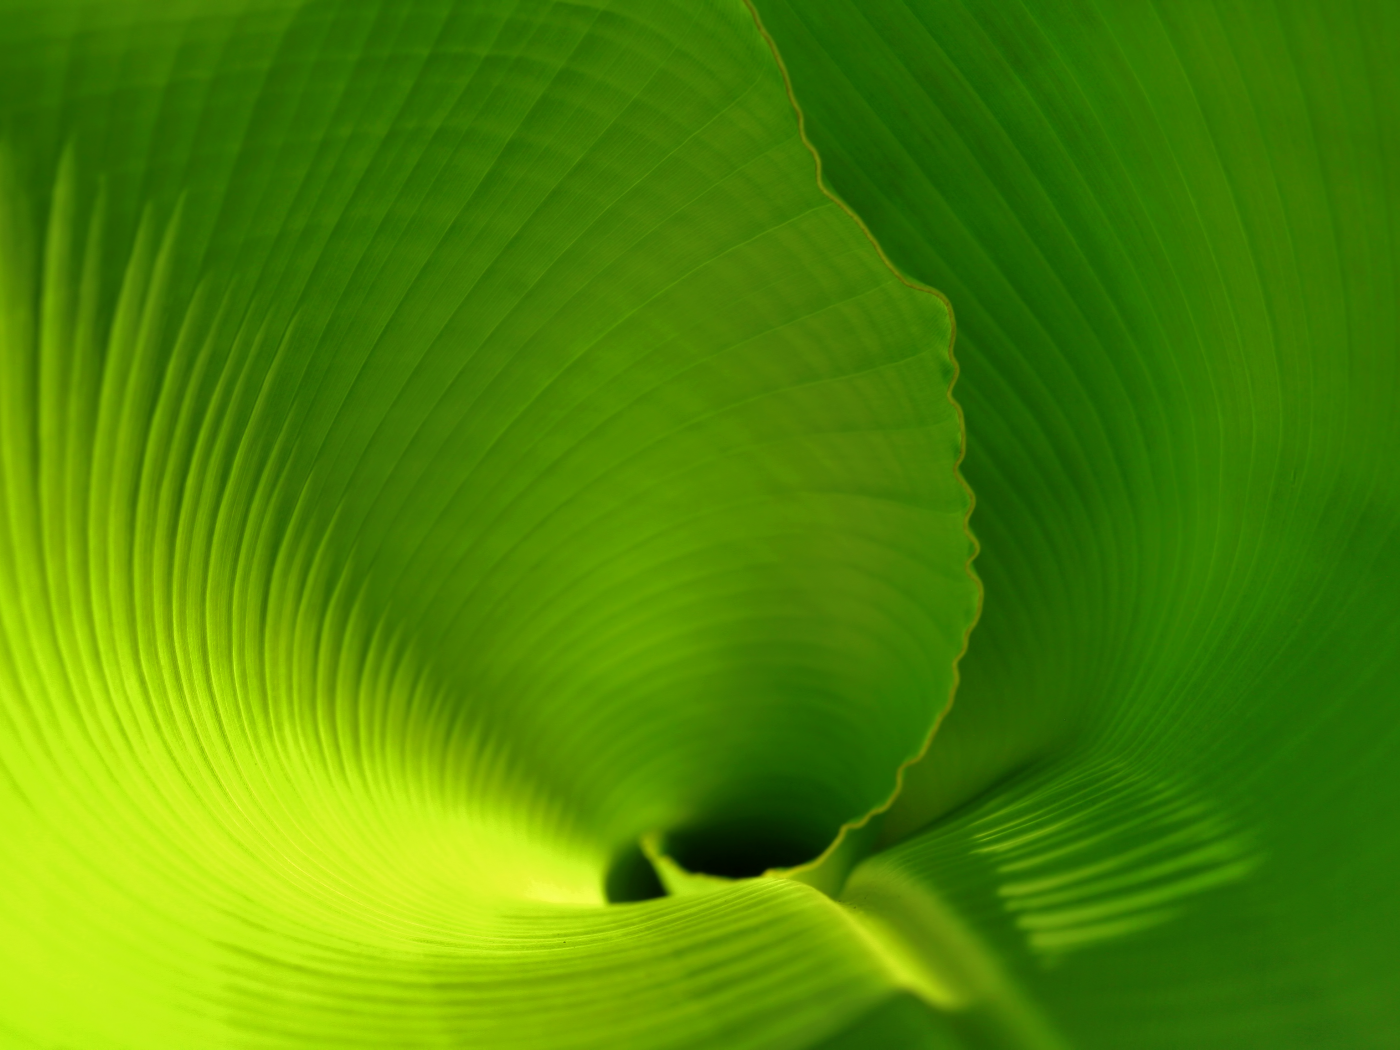 leaf, зеленый лист, тропики, пальмовый лист, скрученный лист, лист, лист банана, banana leaf